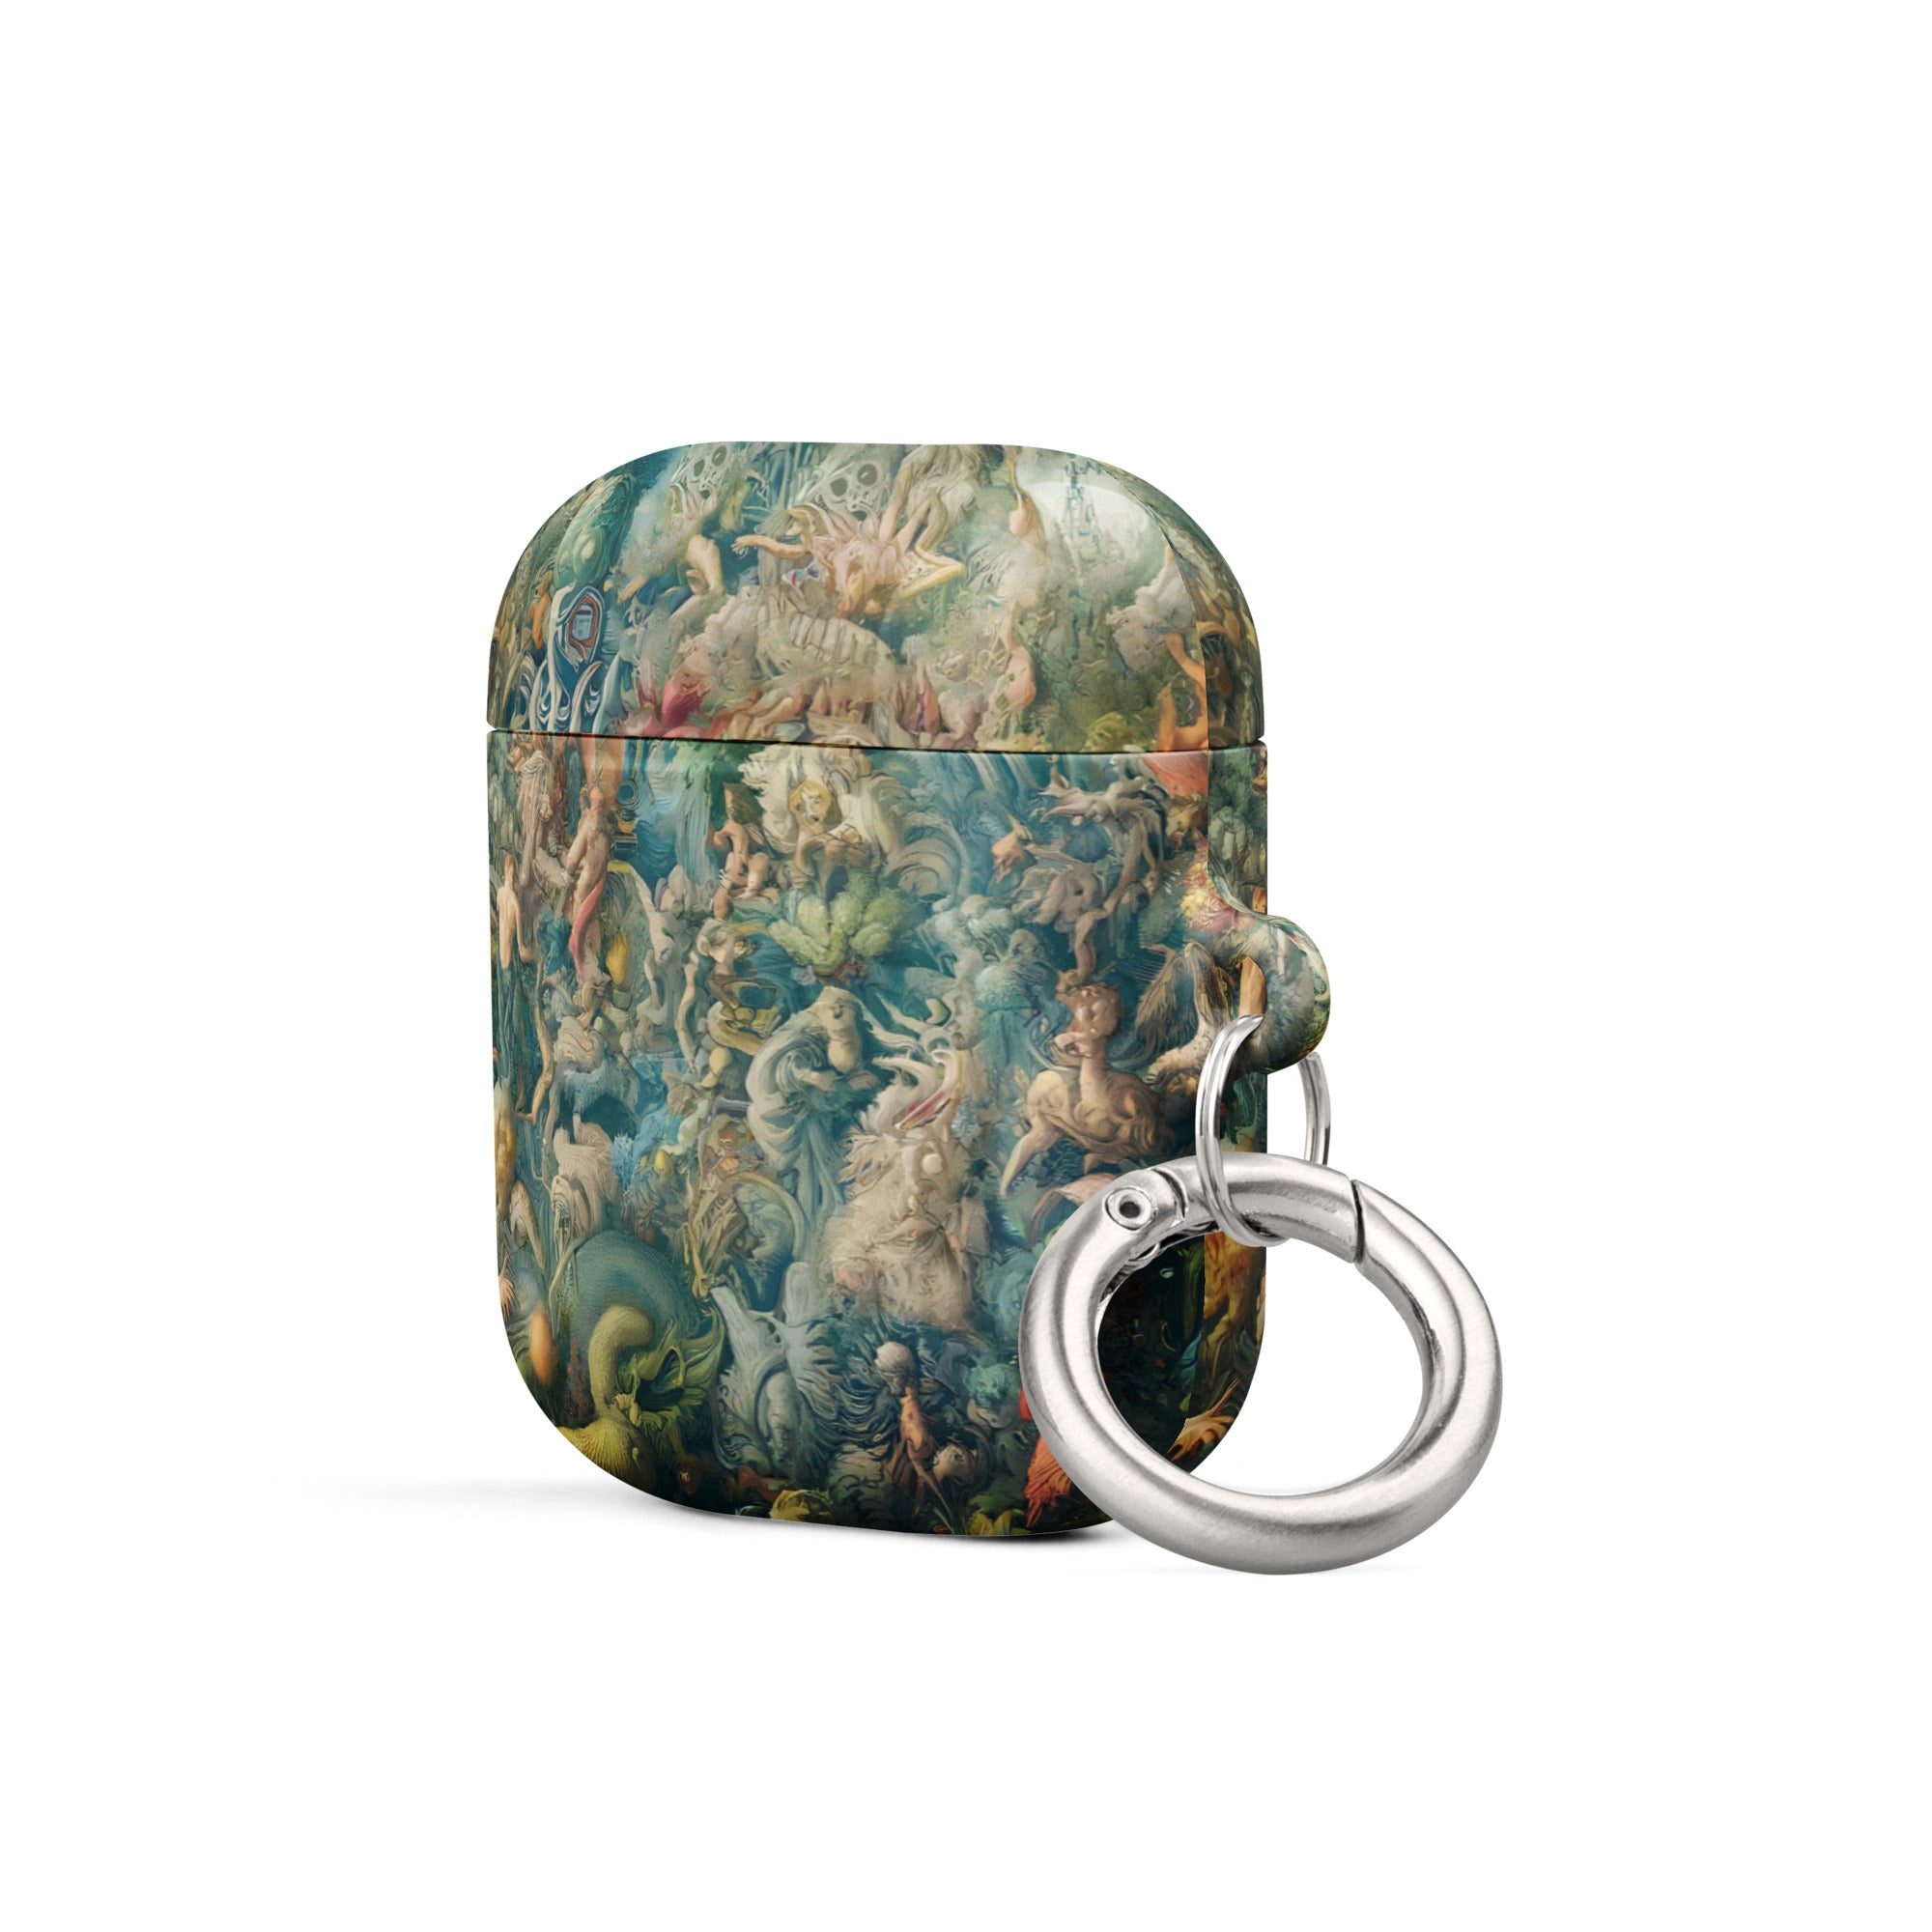 Hieronymus Bosch „Der Garten der Lüste“, berühmtes Gemälde, AirPods®-Hülle | Premium-Kunsthülle für AirPods®